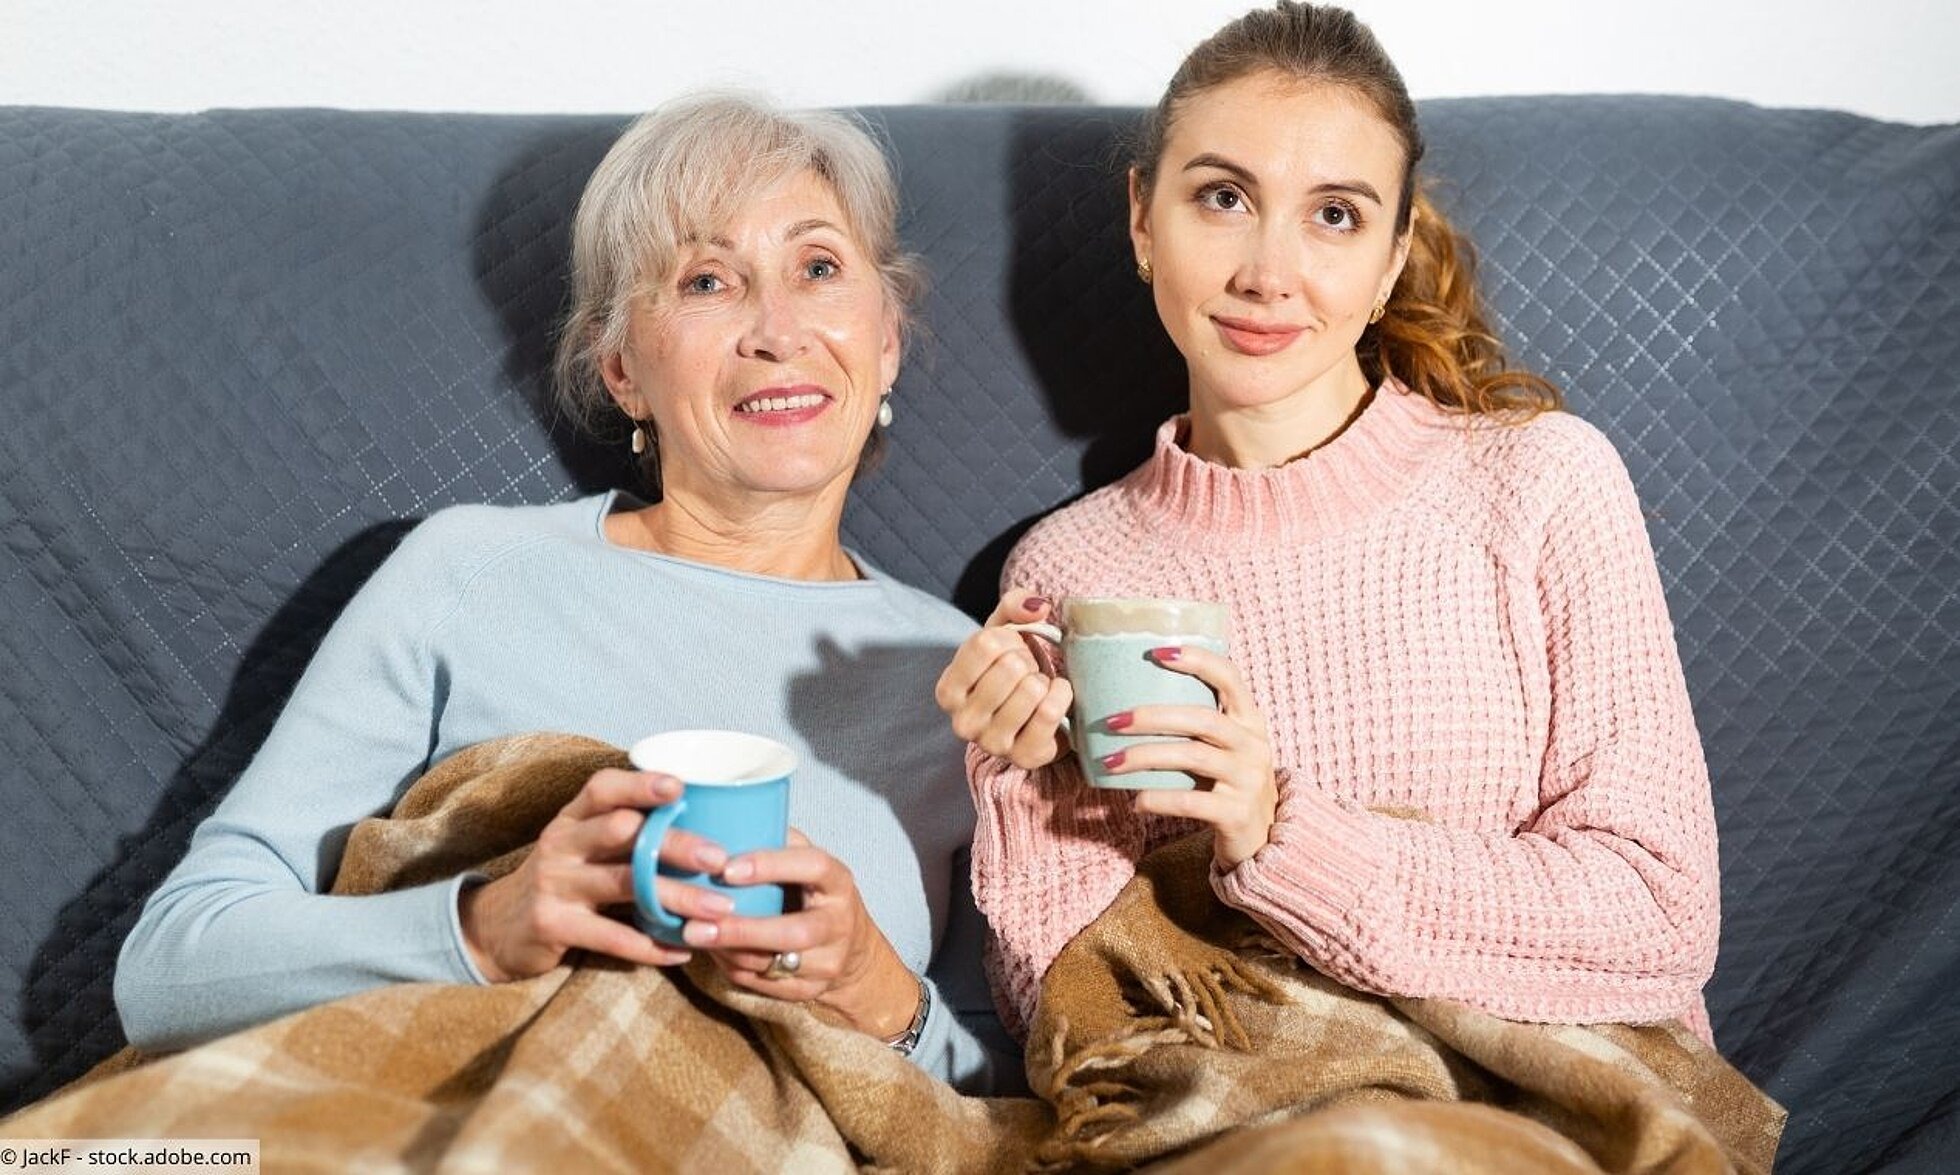 Mutter und erwachsene Tochter sitzen mit Tee auf dem Sofa.